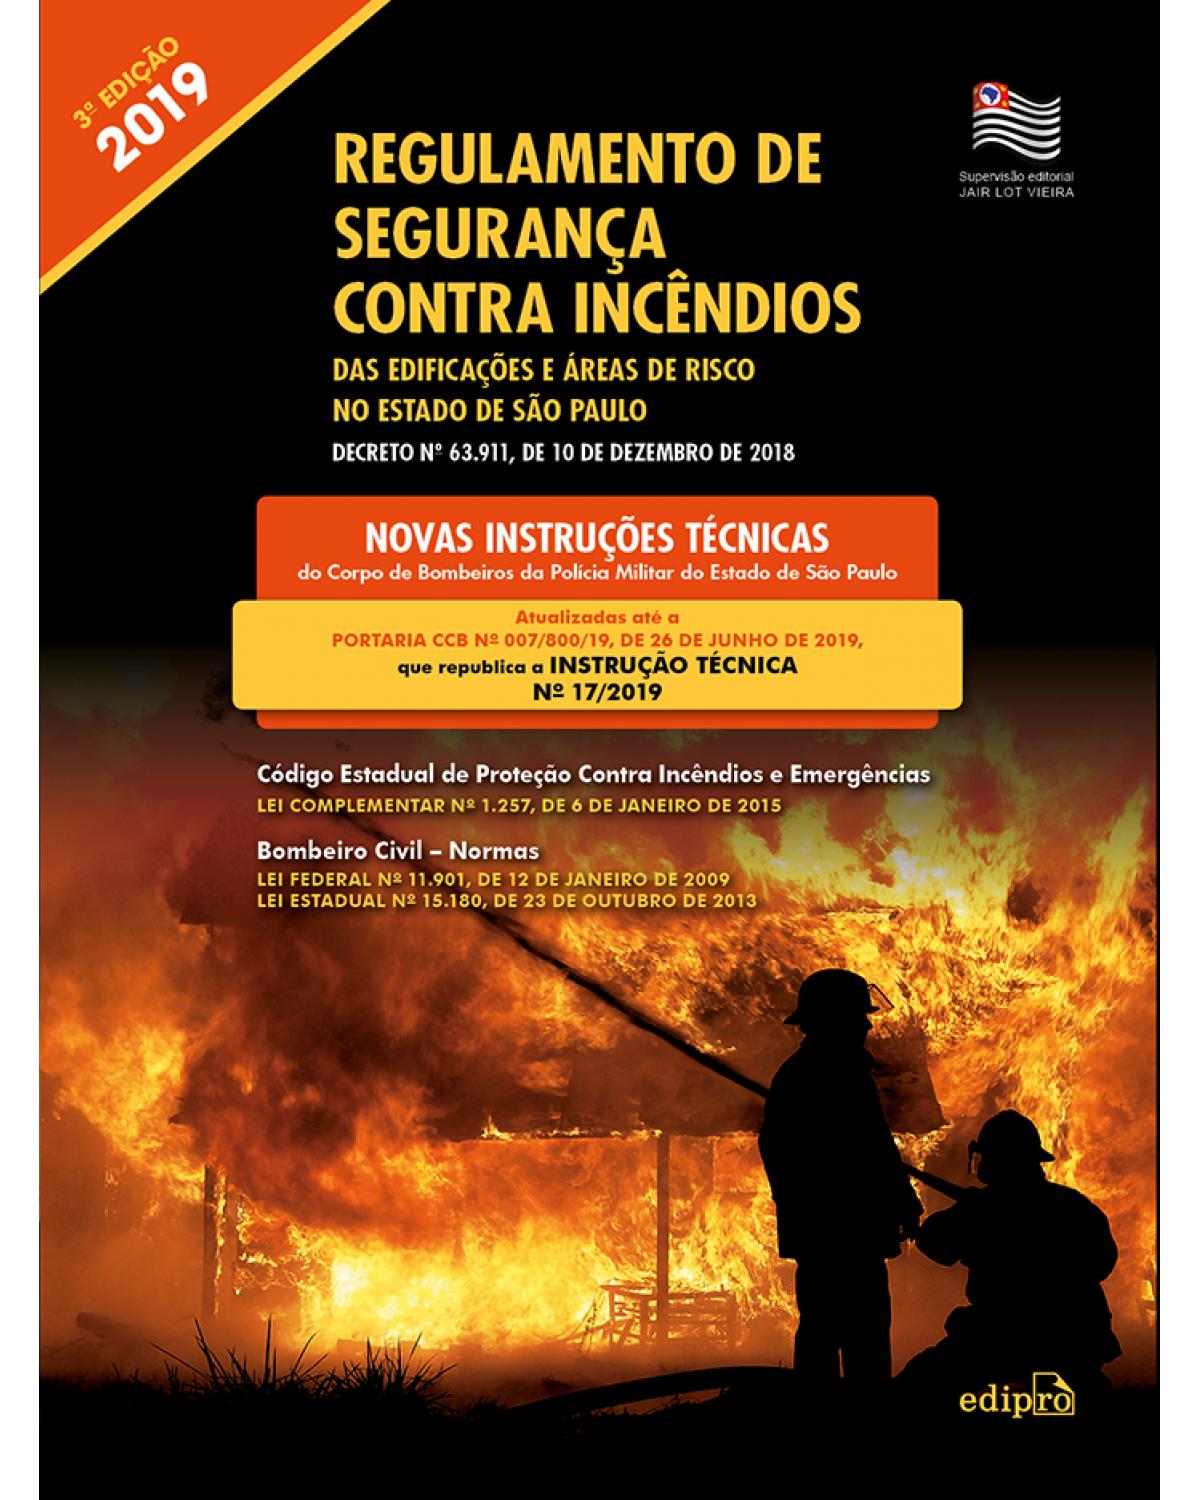 Regulamento de segurança contra incêndios das edificações e áreas de risco no estado de São Paulo: Decreto N.º 63.911, de 10 de dezembro de 2018